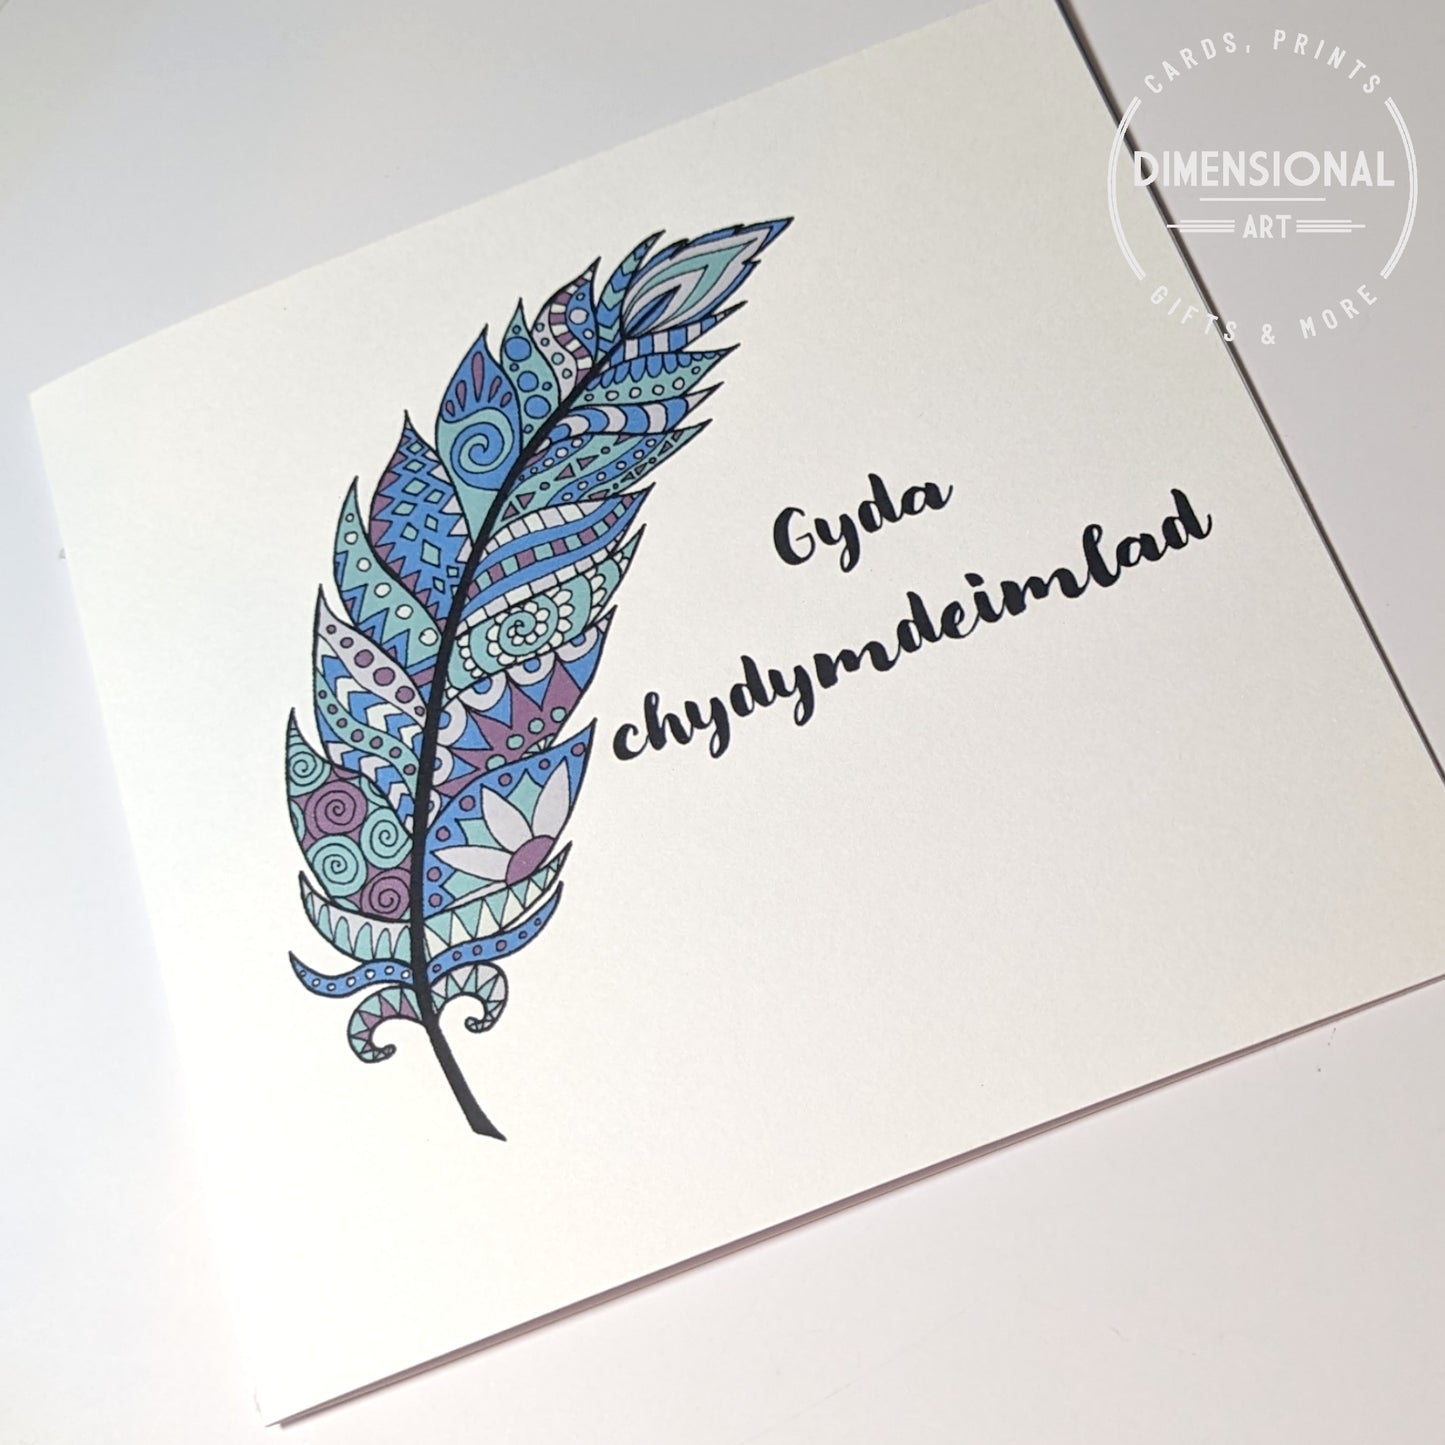 Feather Gyda chydymdeimlad (Sympathy Card) - Welsh